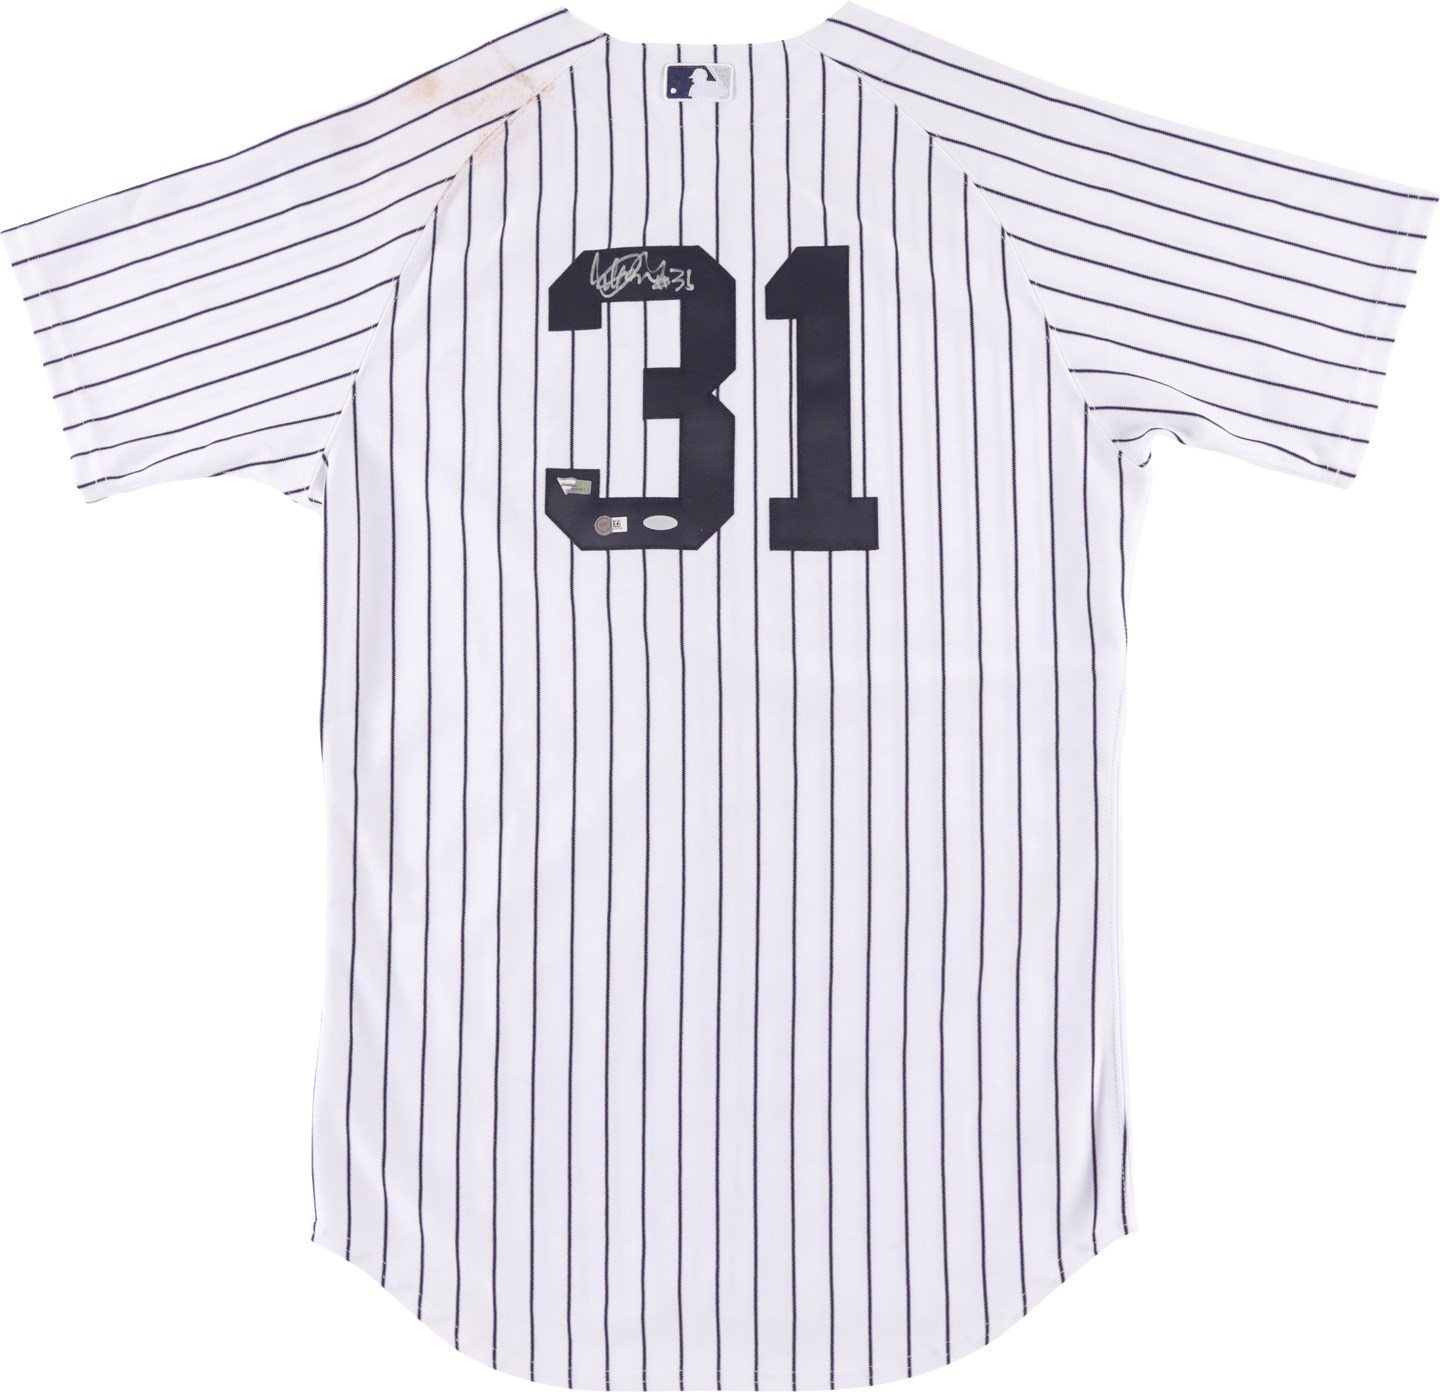 - 2013 Ichiro Suzuki New York Yankees Signed Game Worn Jersey (Photo-Matched, MLB & Steiner)